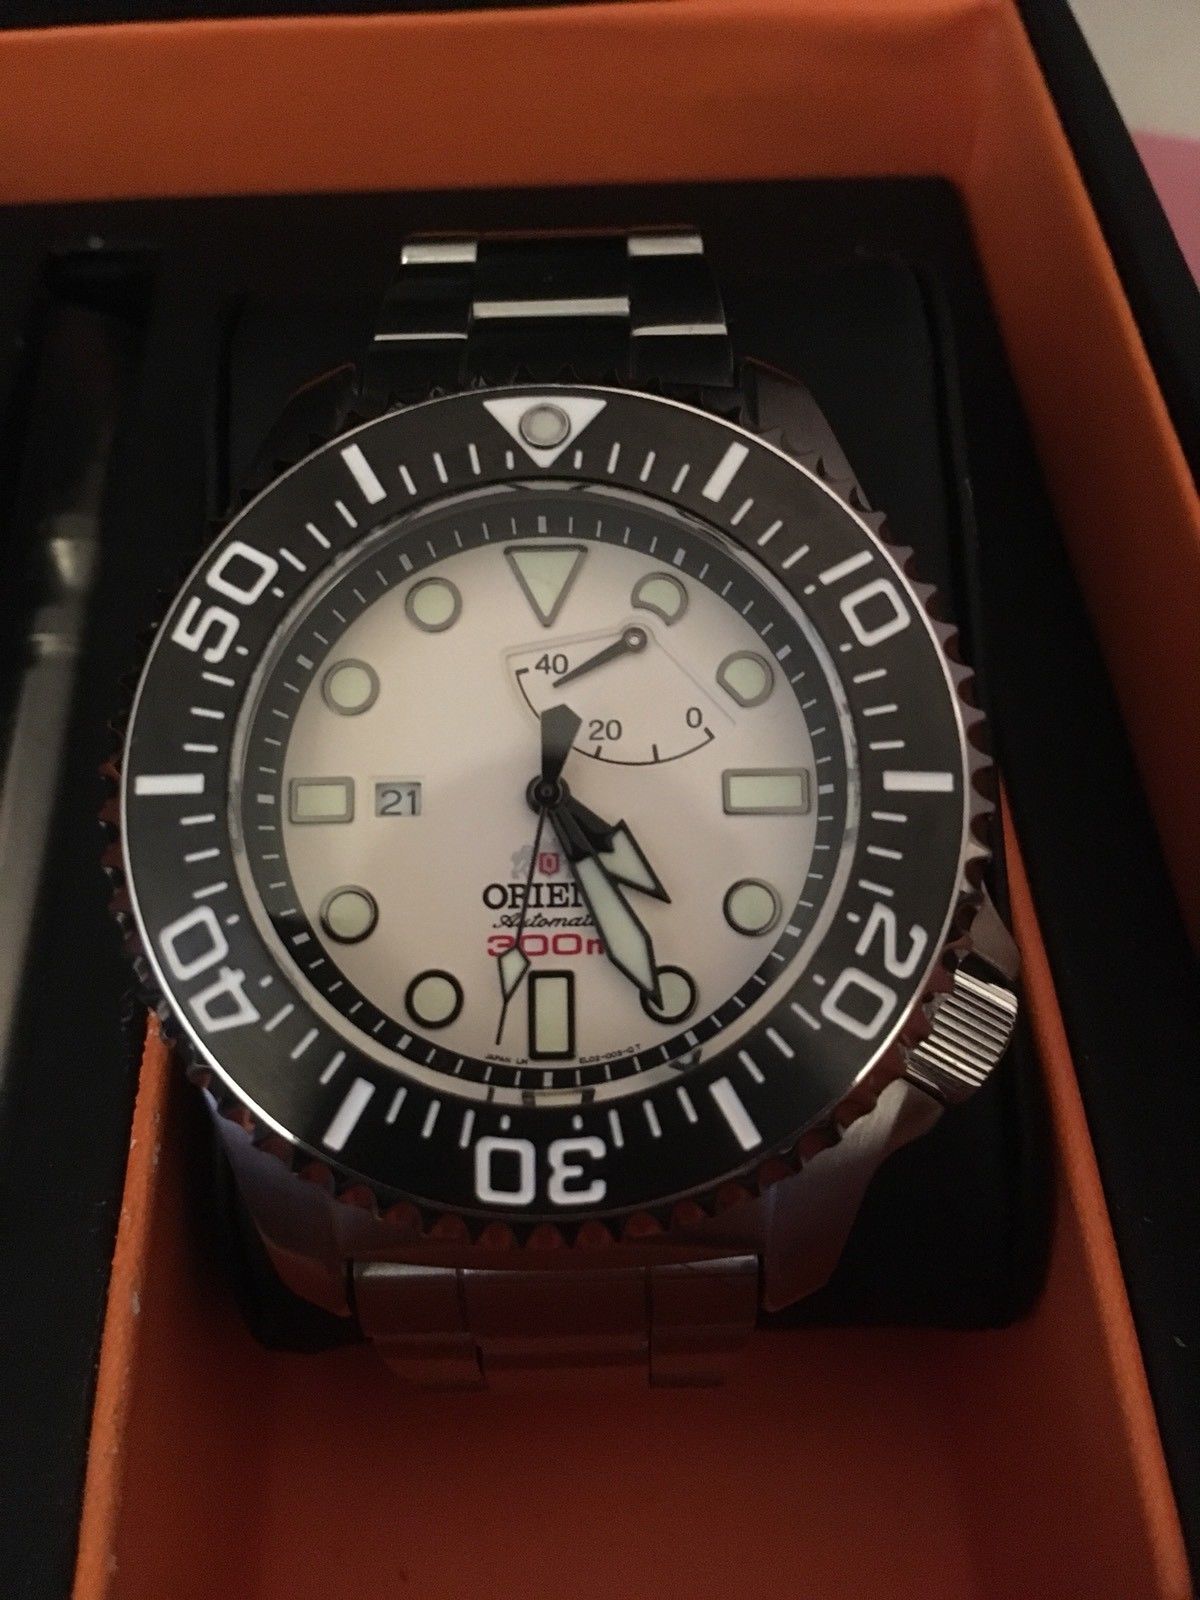 Les montres les plus chères de la marque Orient vendues sur eBay 